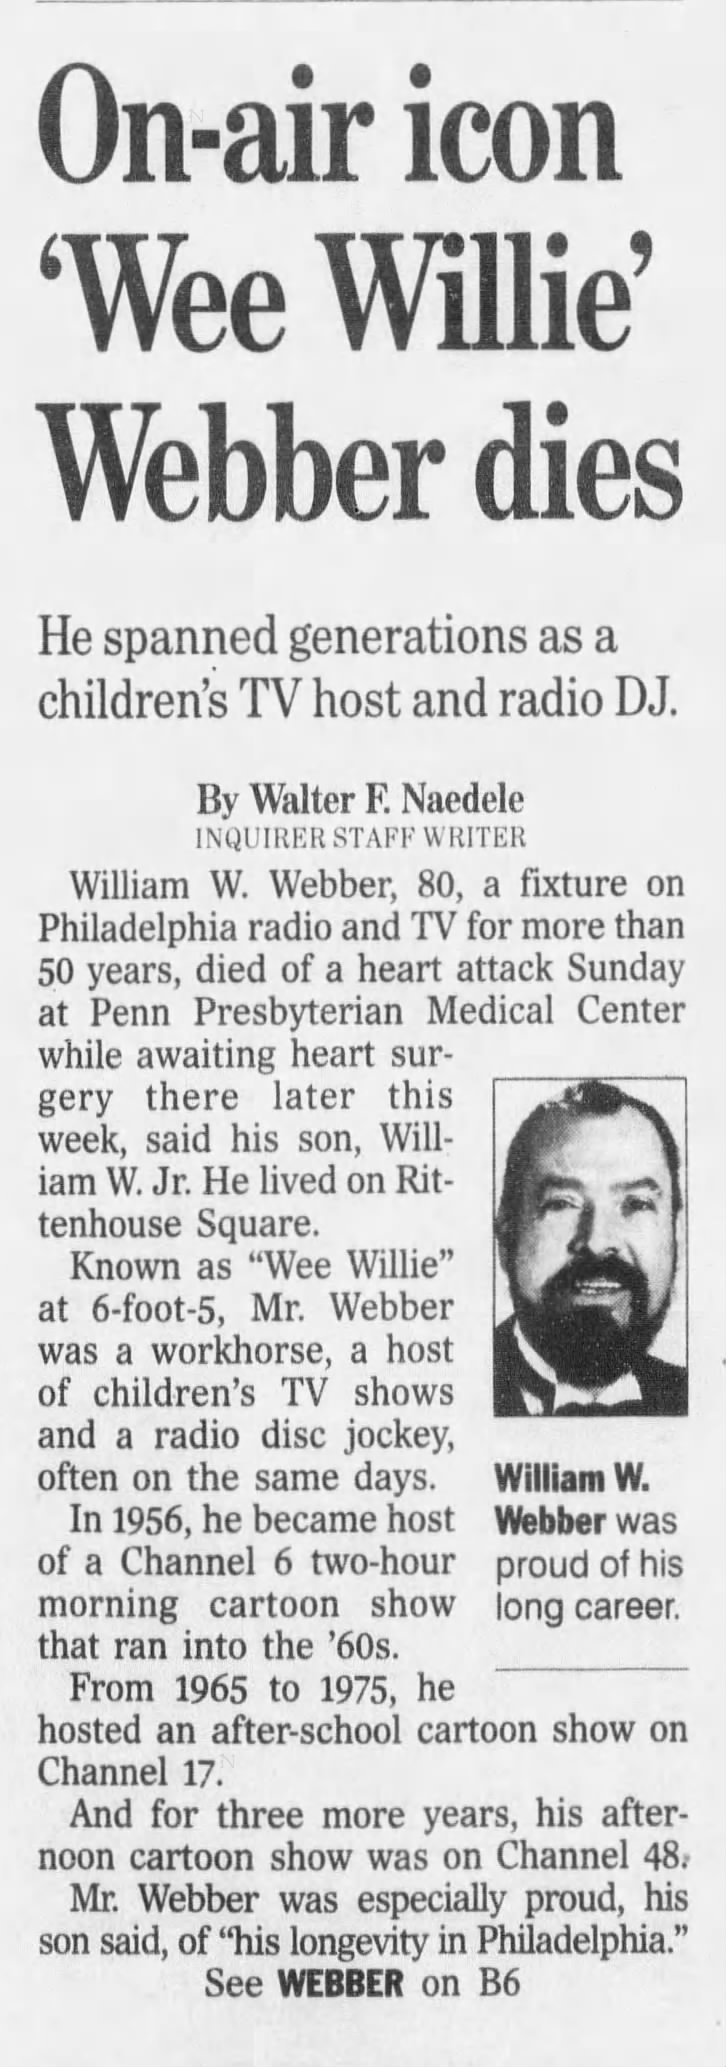 On-air icon 'Wee Willie' Webber dies